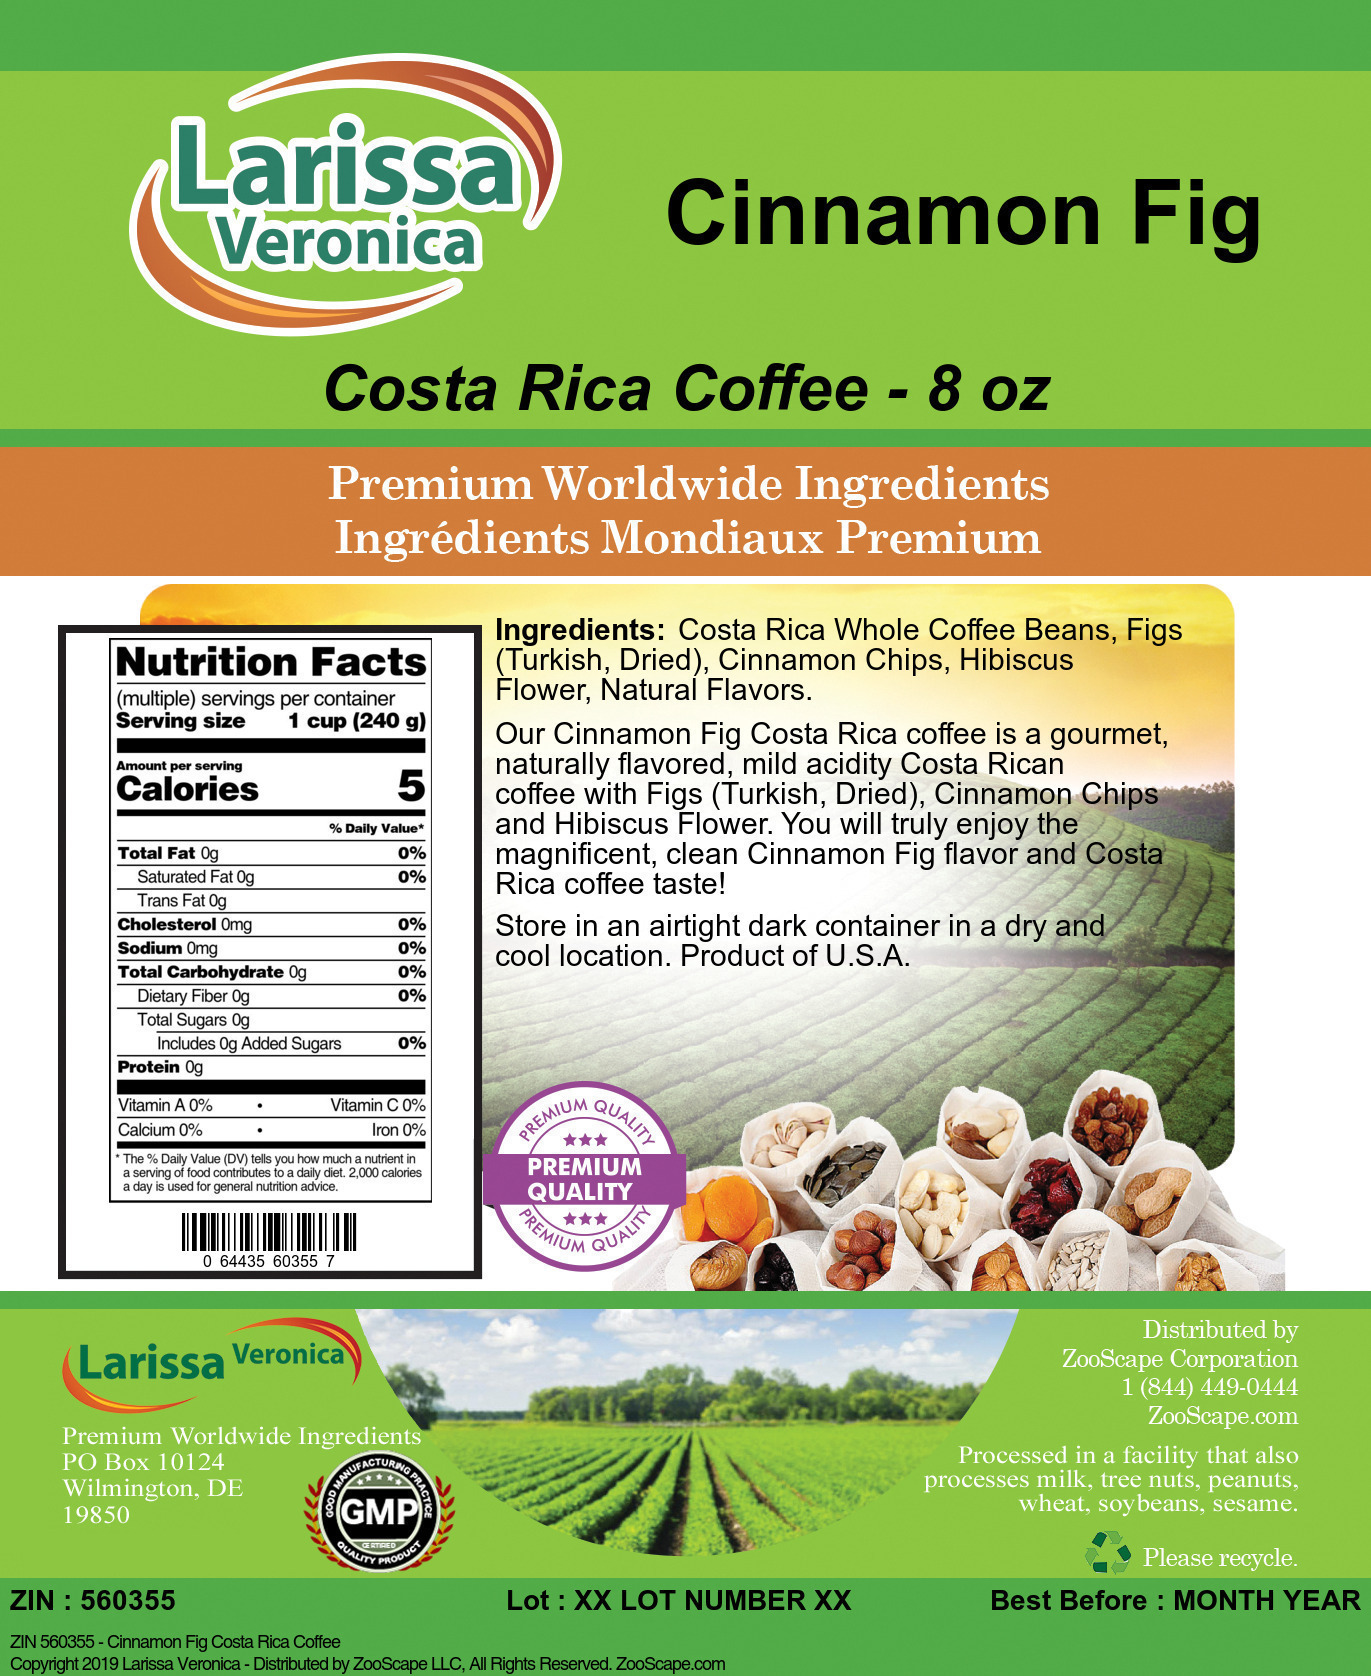 Cinnamon Fig Costa Rica Coffee - Label